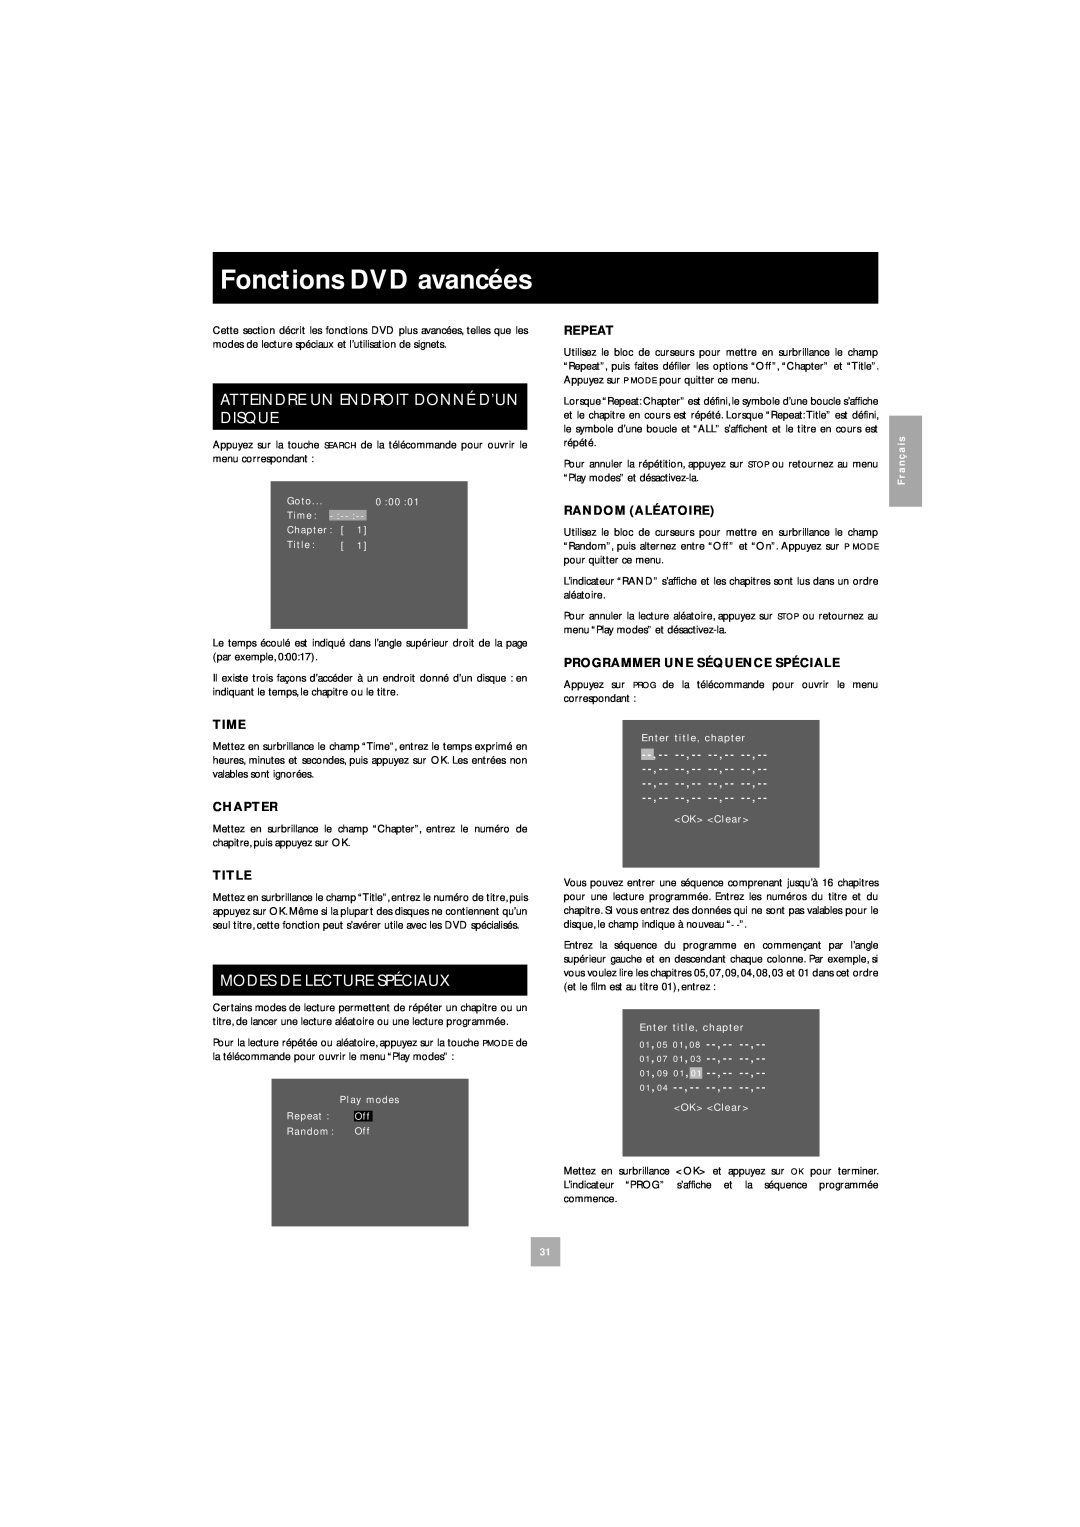 Arcam DV27 manual Fonctions DVD avancées, Atteindre Un Endroit Donné D’Un Disque, Modes De Lecture Spéciaux 